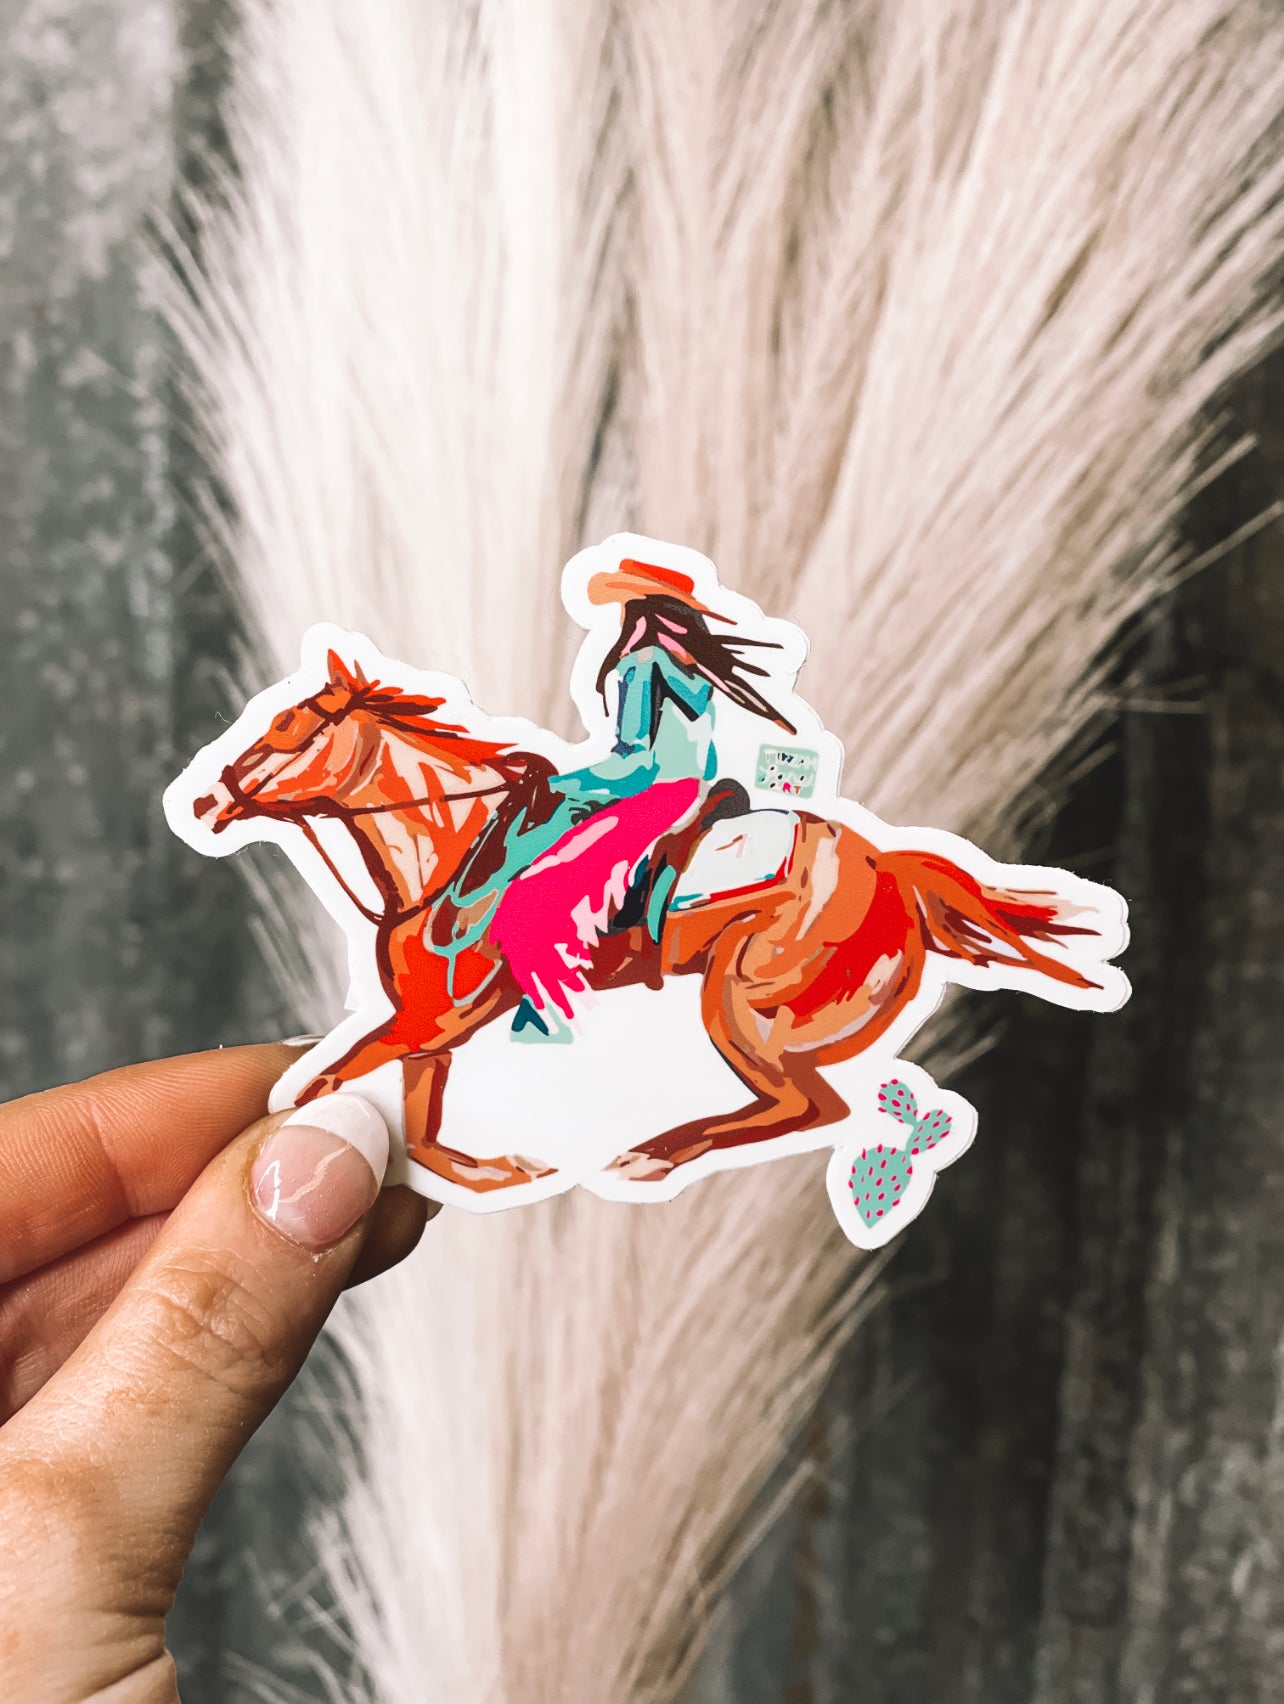 Western Brunette Cowgirl Horse Sticker